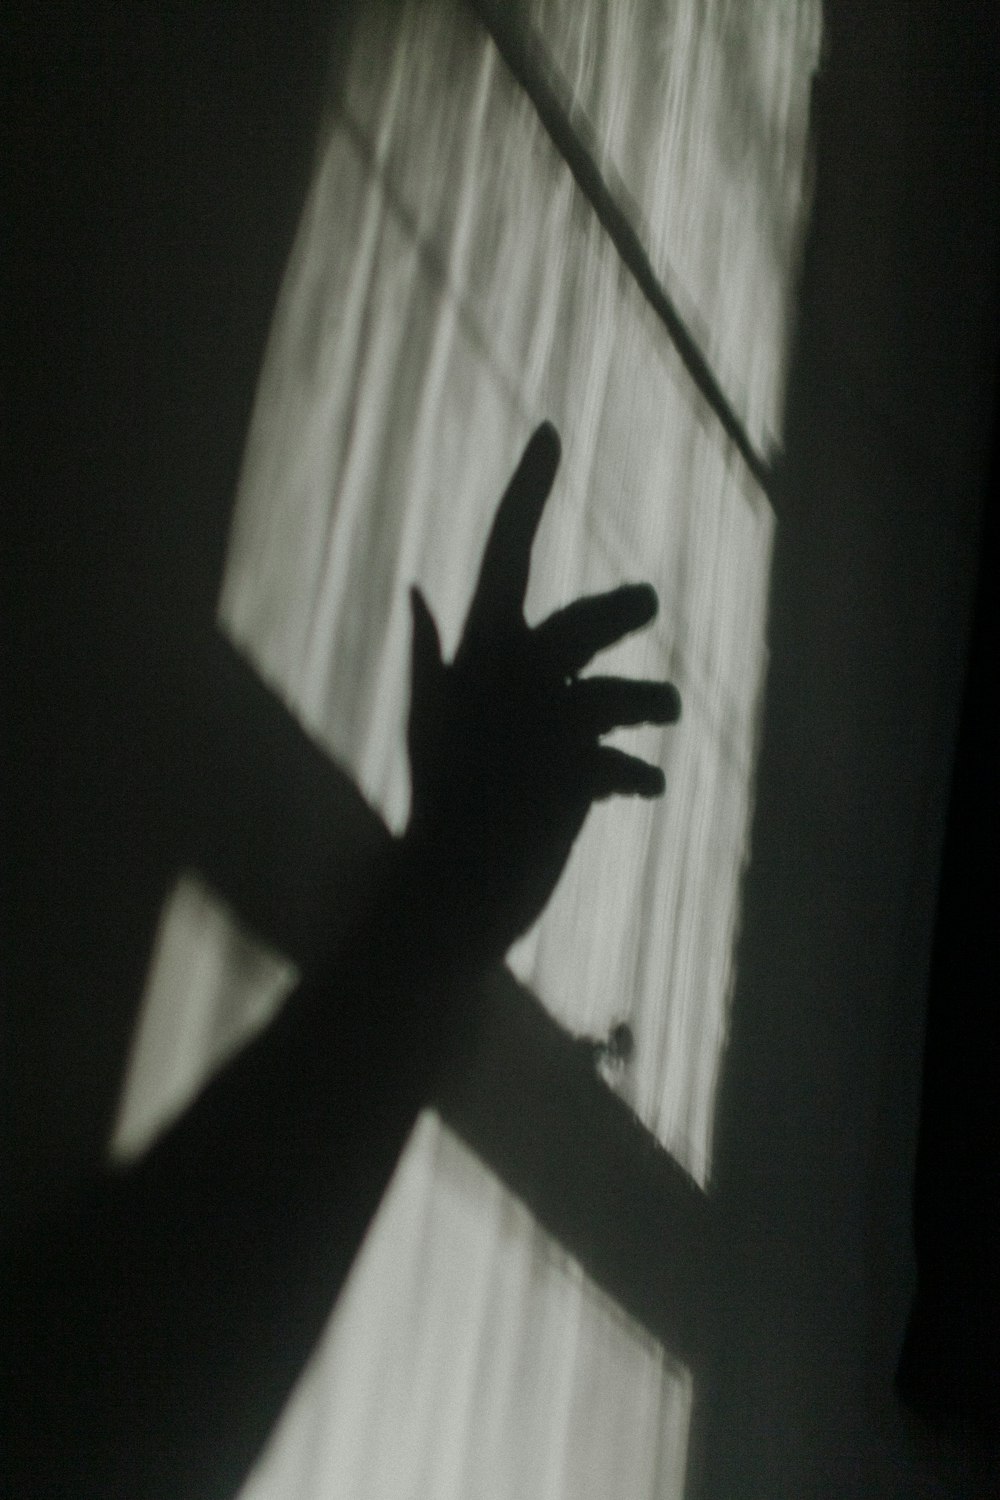 ombra della mano sulla finestra di vetro